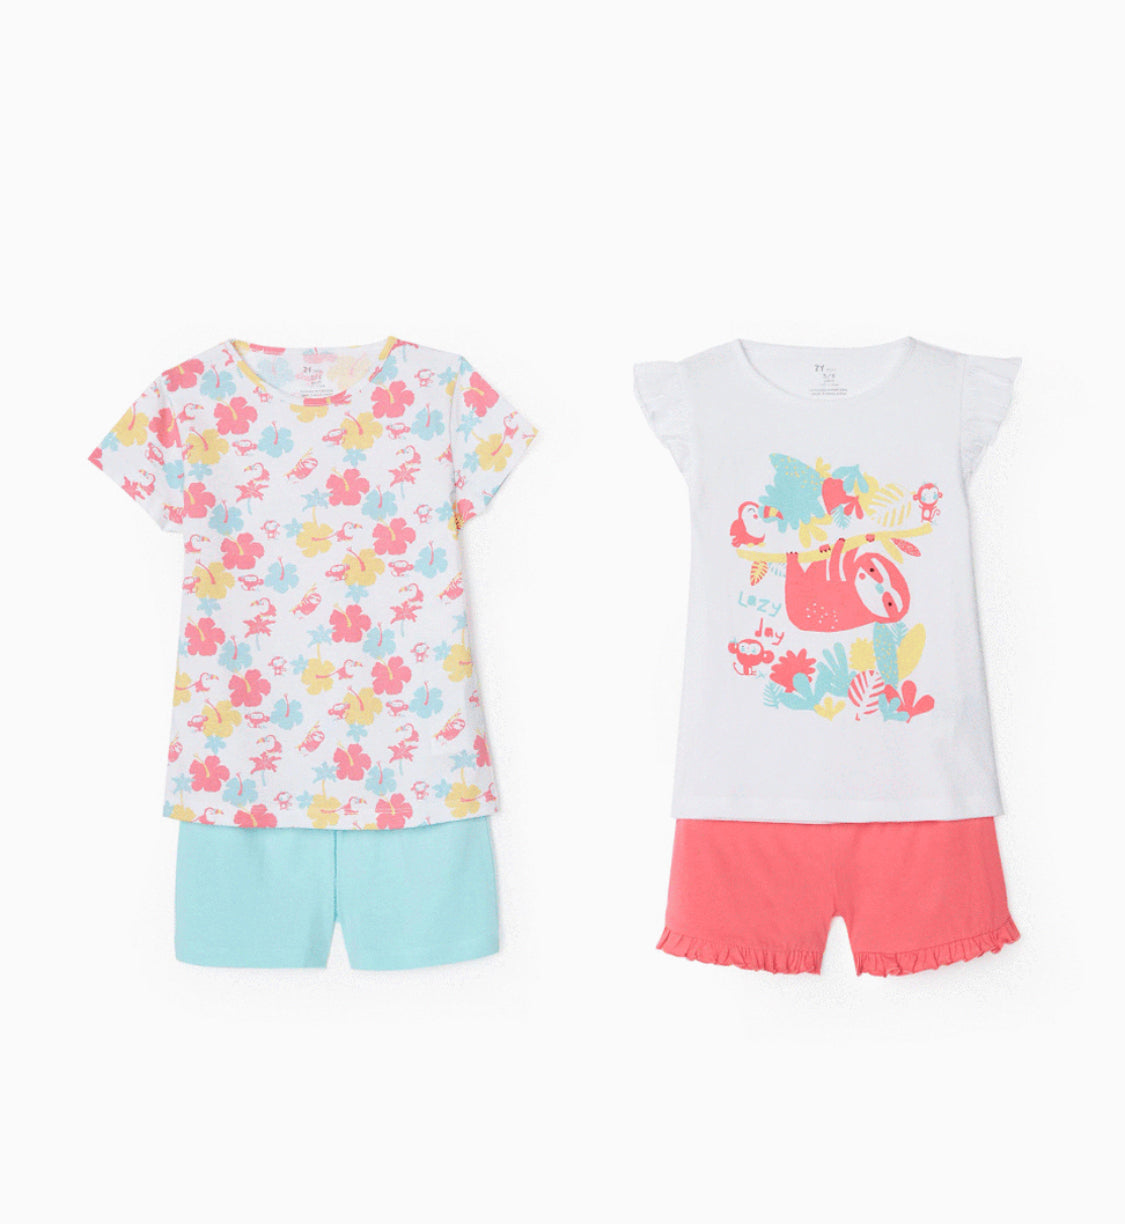 2 Pijamas Para Niña 'Lazy Day', Multicolor lolimariscalmoda 19.99